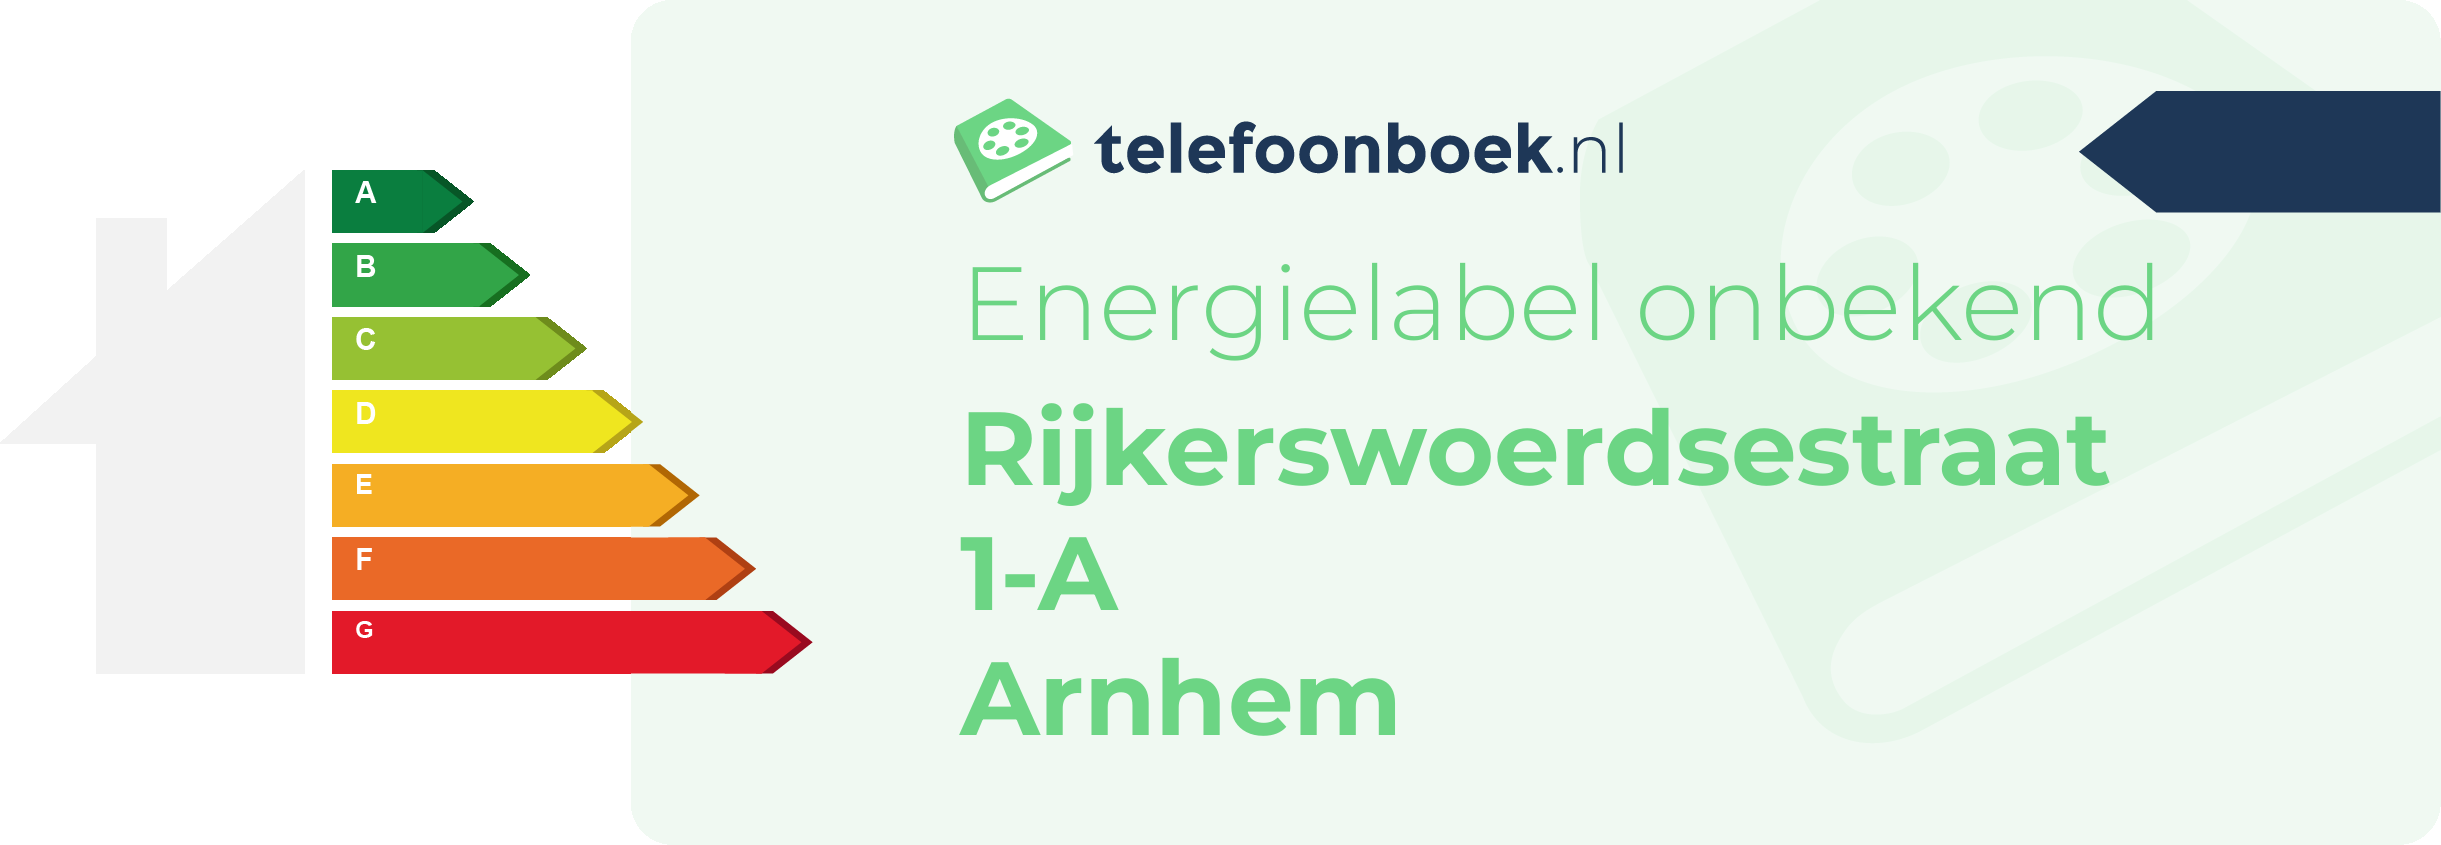 Energielabel Rijkerswoerdsestraat 1-A Arnhem